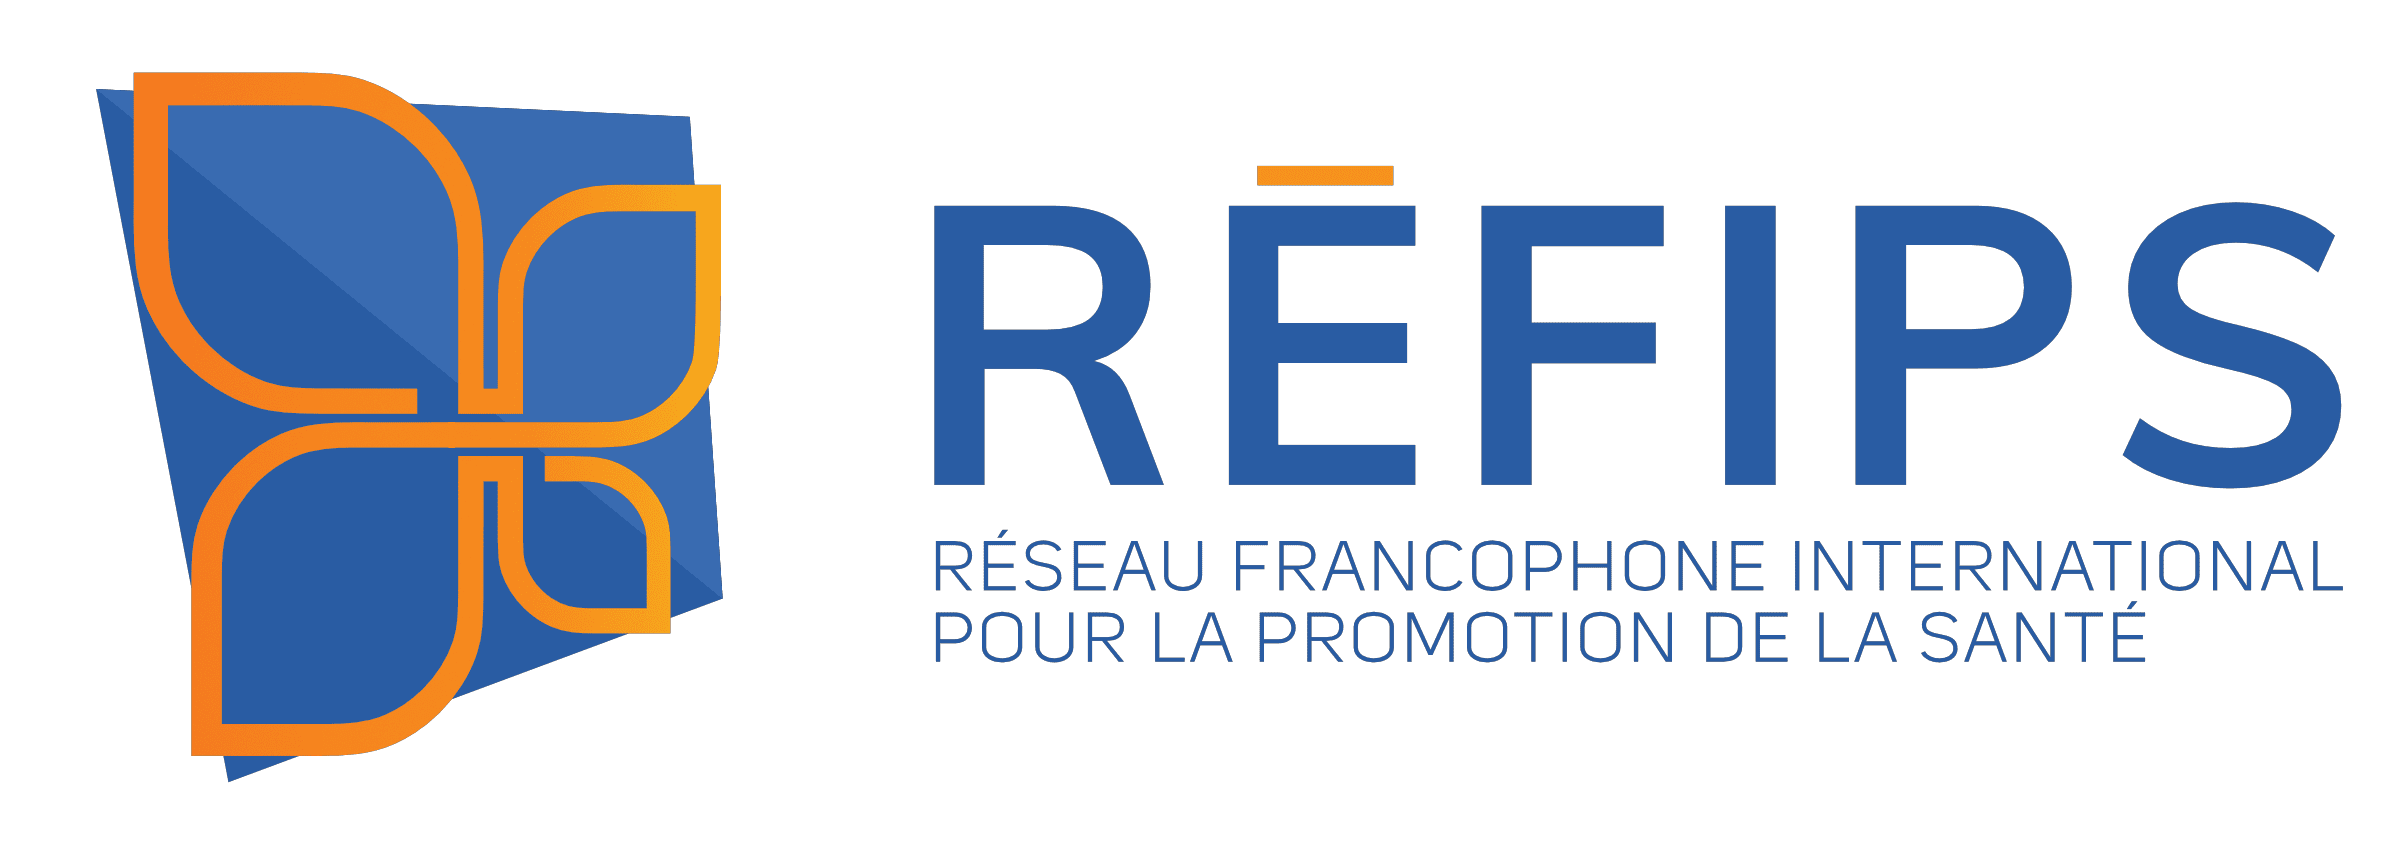 Réseau Francophone International pour la Promotion de la Santé (RÉFIPS)